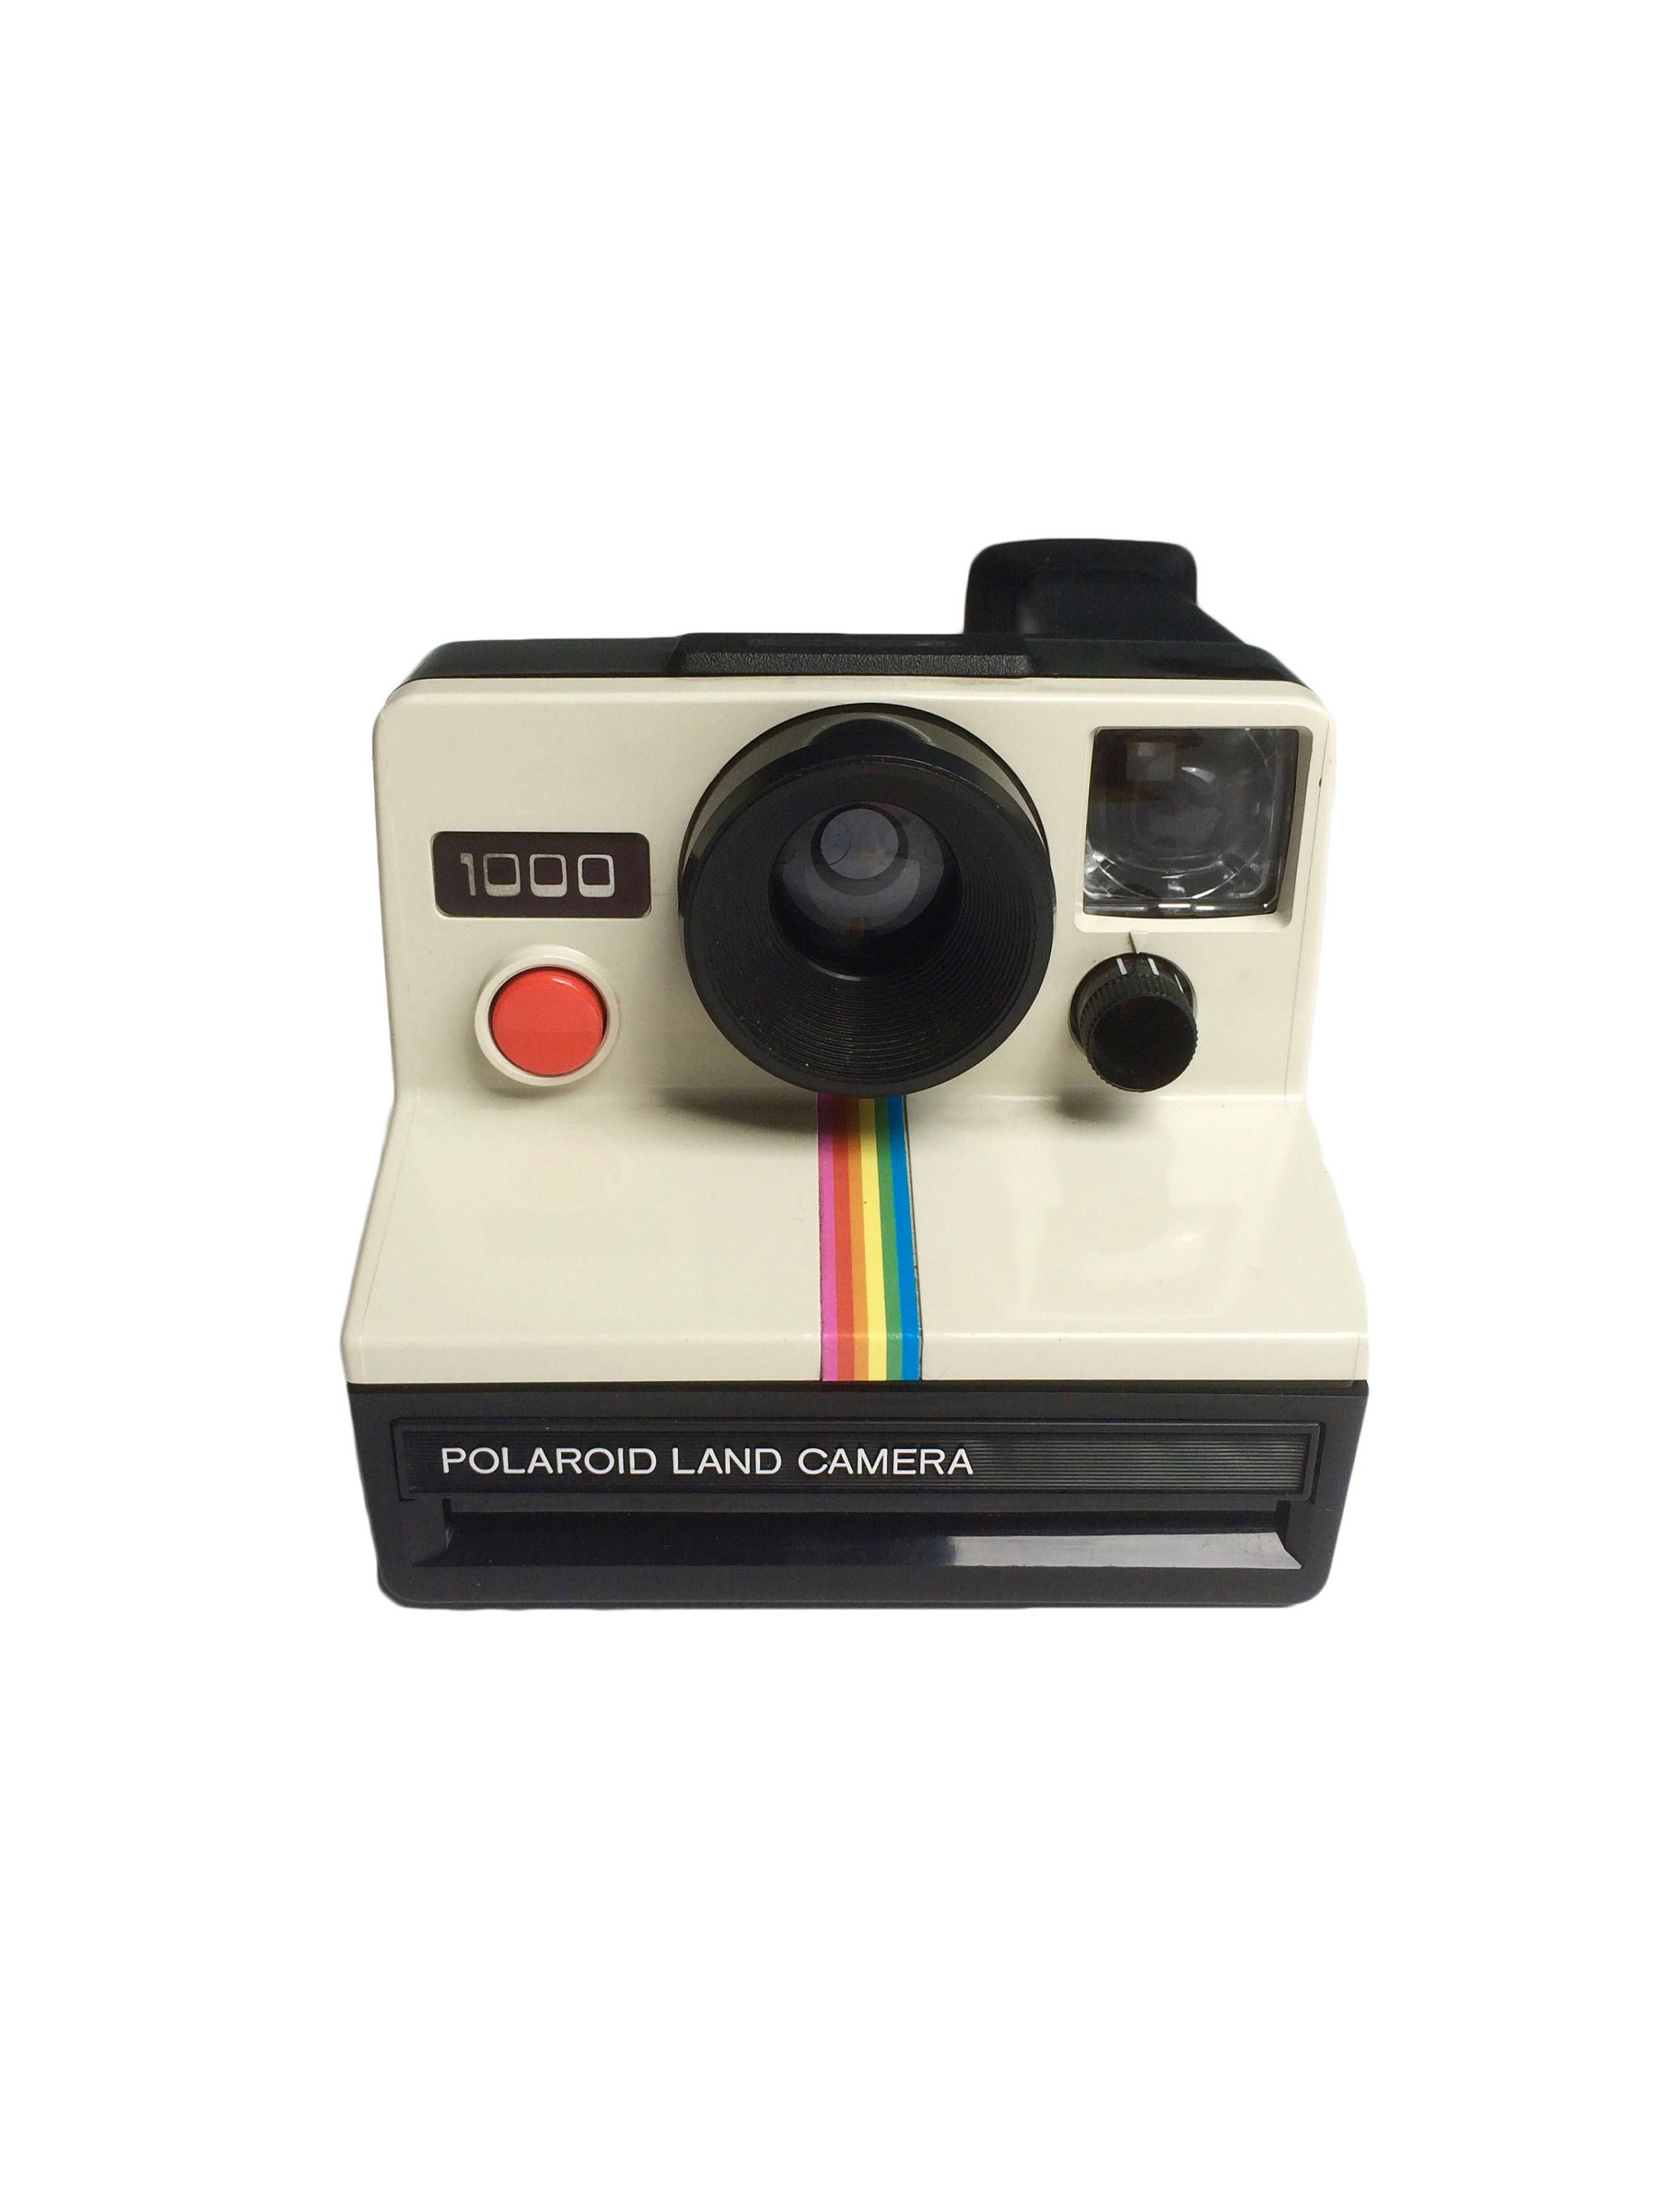 Polaroid Camera - Polaroid 1000 Red Button - Polaroid Land Camera ...